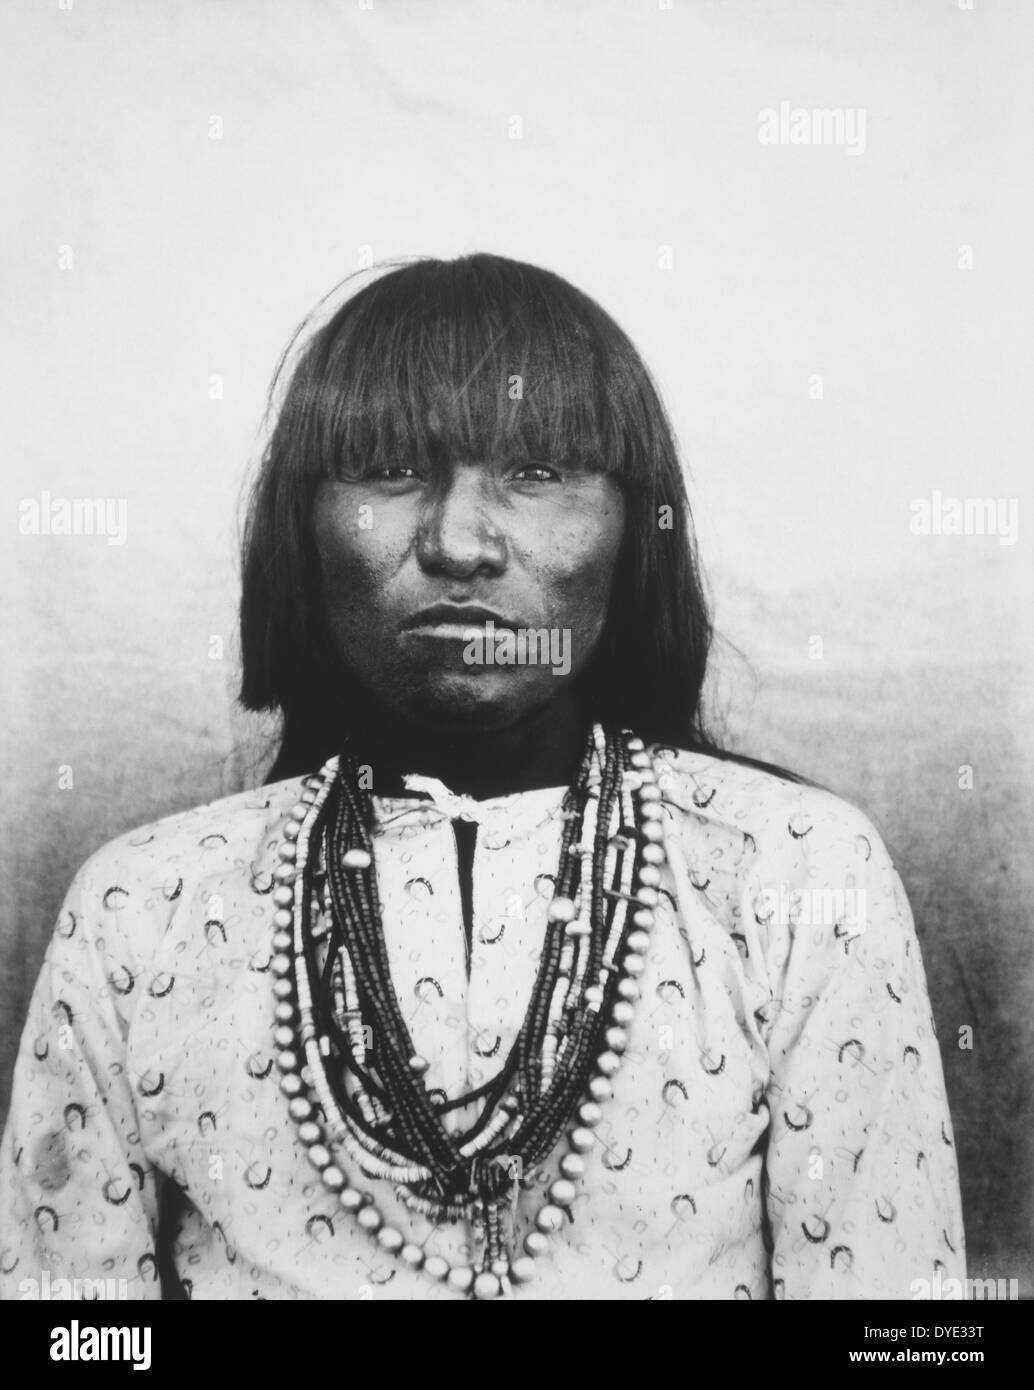 Homme Hopi, Portrait, Supawlavi, Arizona, Etats-Unis, vers 1900 Banque D'Images